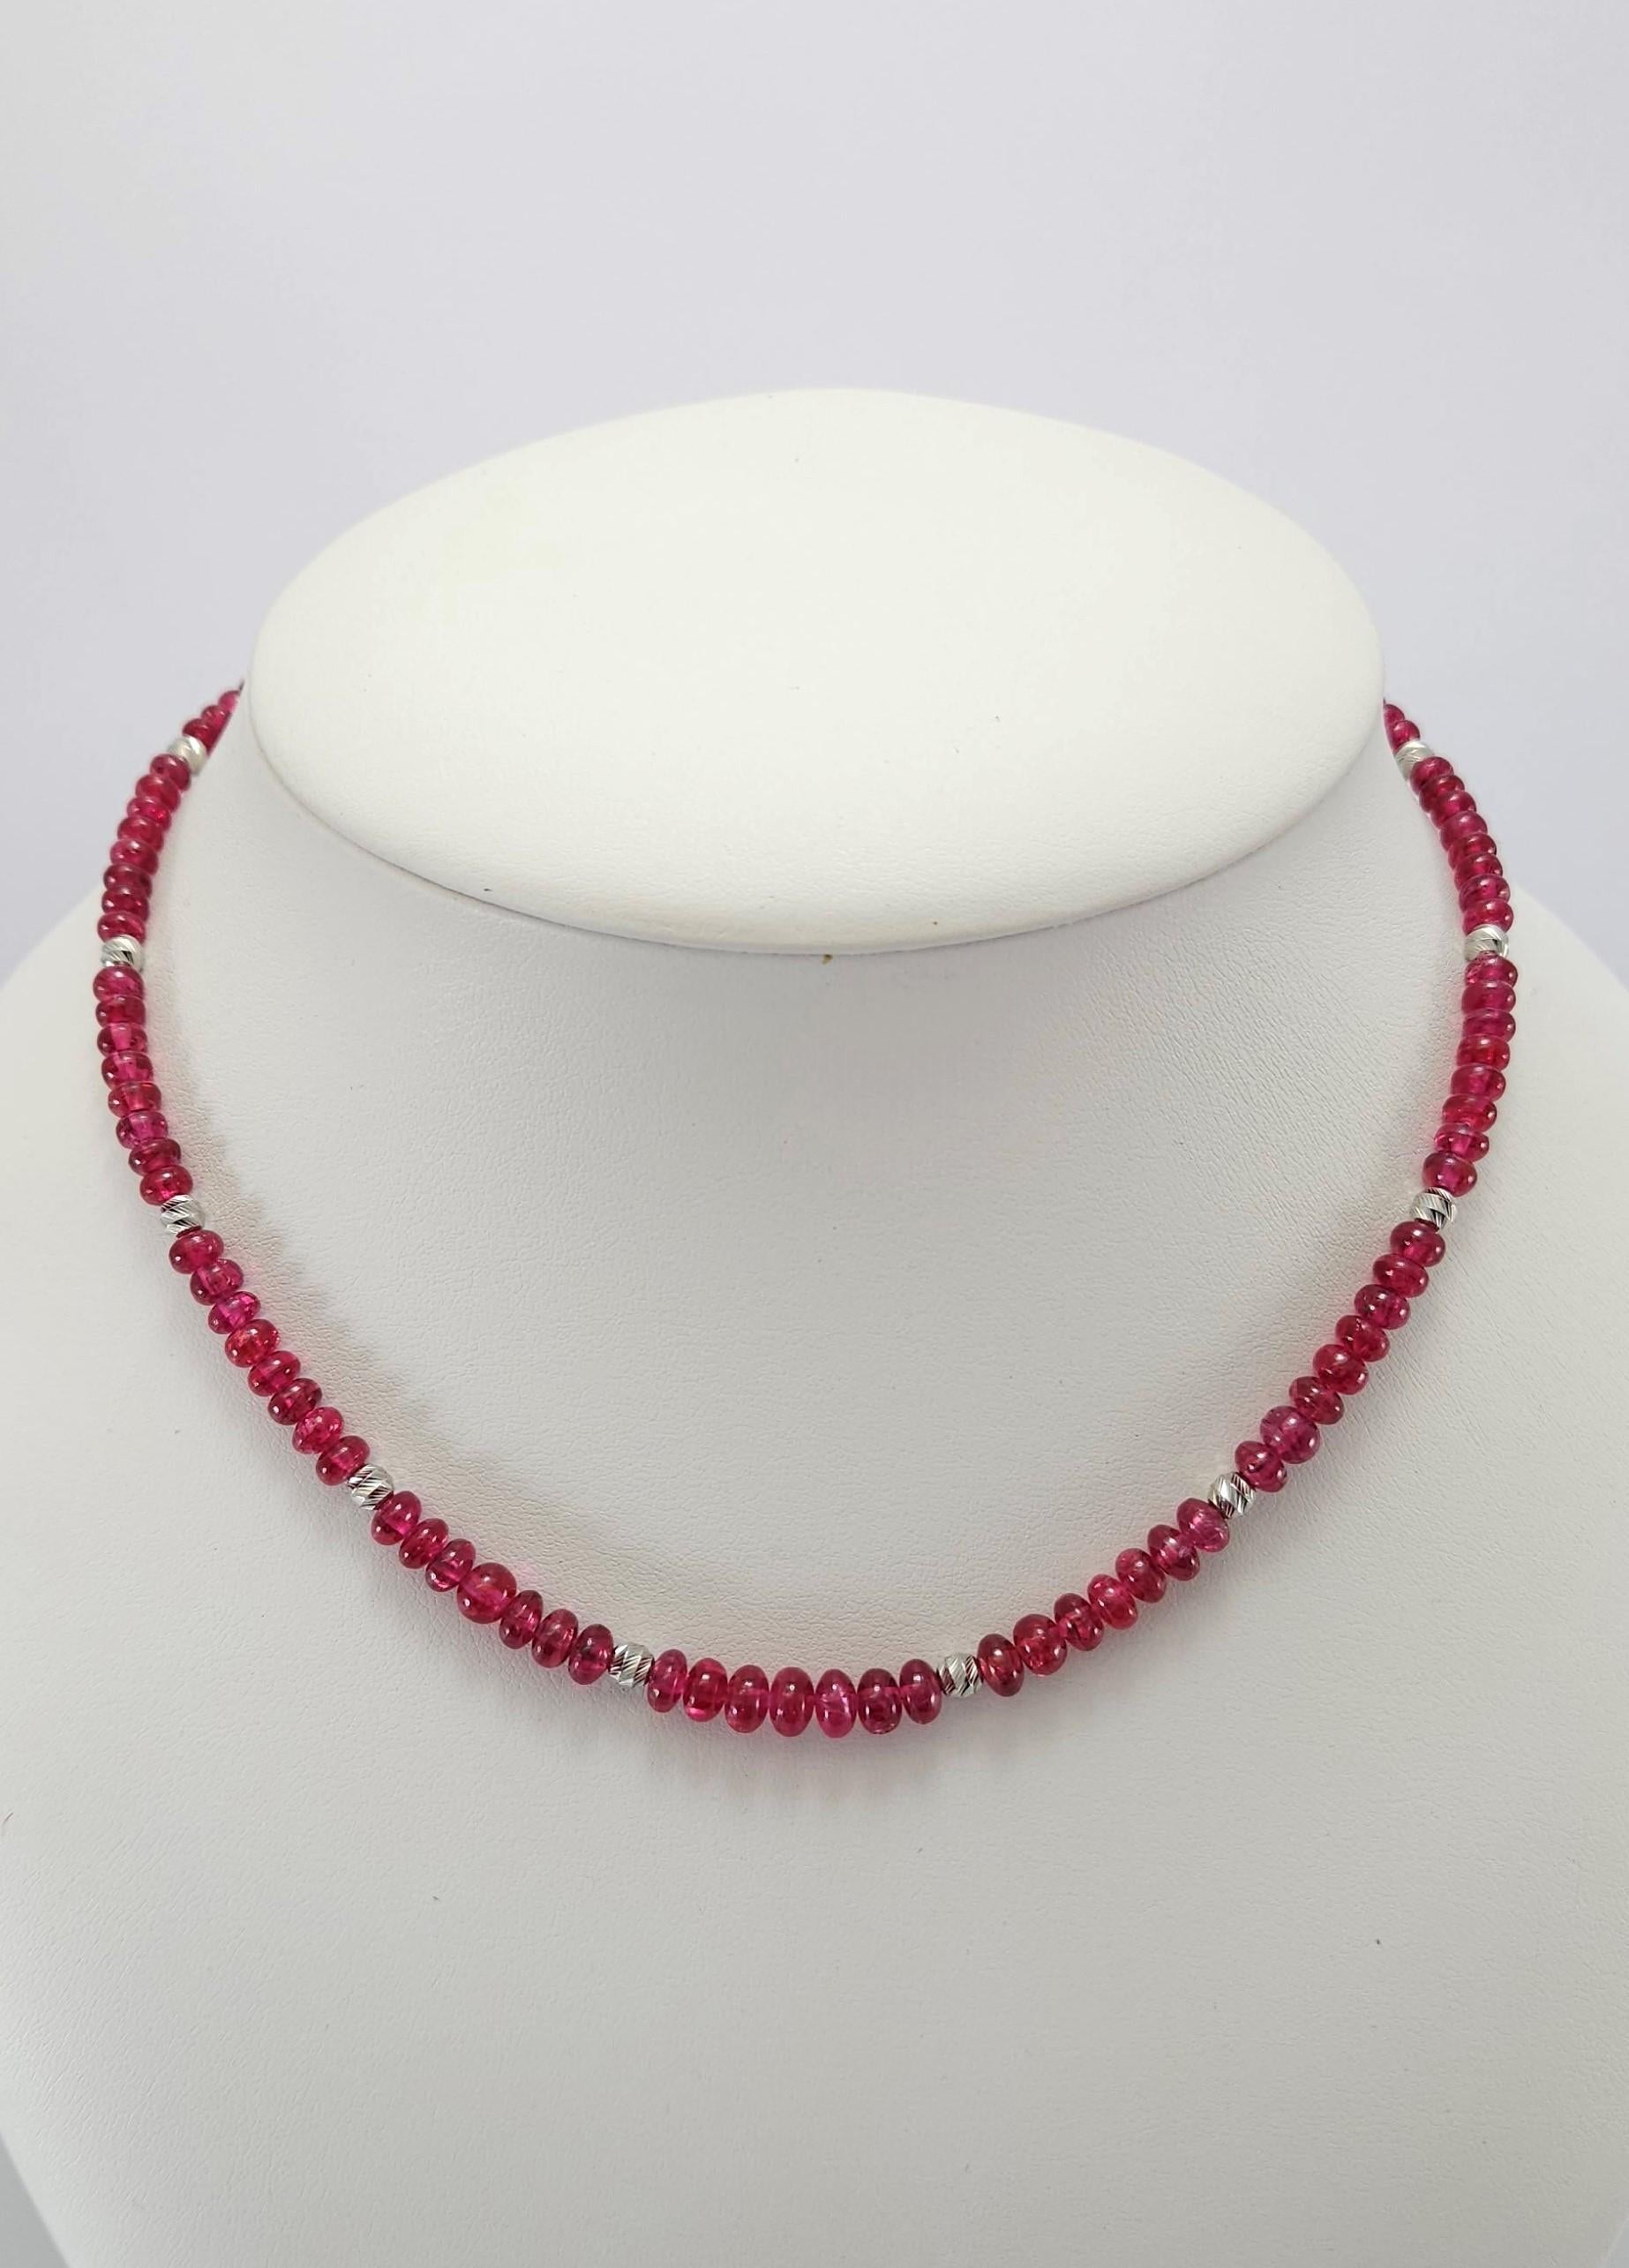 Diese natürliche rote Spinell Rondell Perlenkette mit 18 Karat Weißgold ist handgeschliffen in deutscher Qualität.
Der Sechskant-Schraubverschluss ist einfach zu bedienen und sehr sicher.
Dieses hochwertige MATERIAL in einer Halskette zu finden, ist